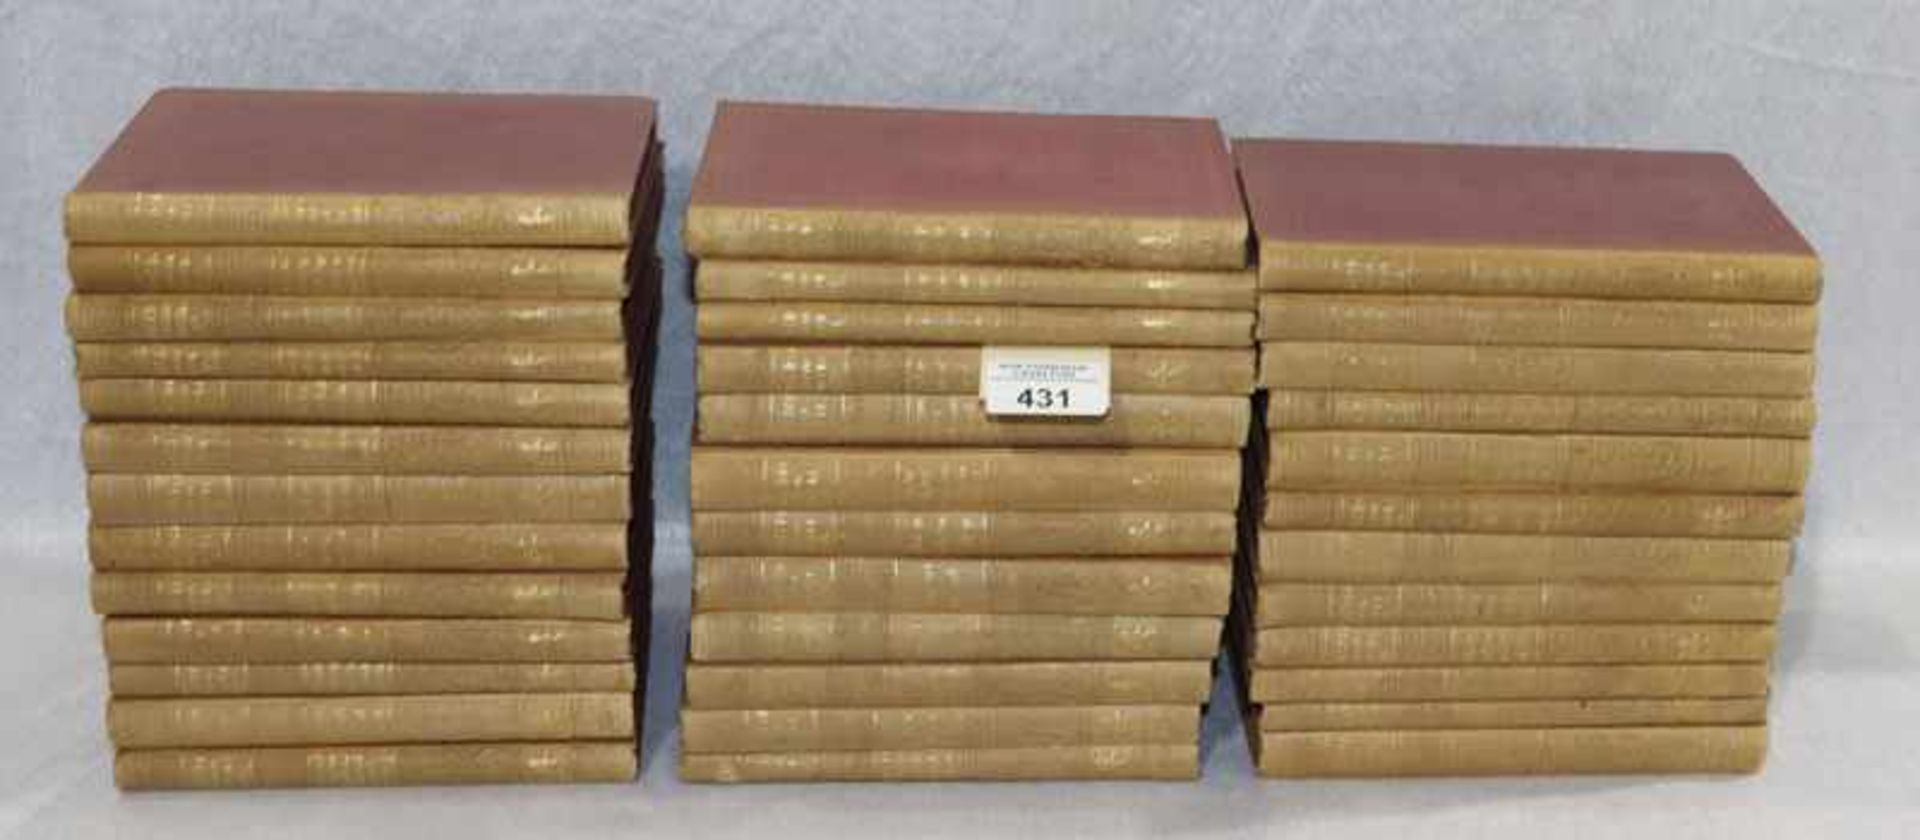 Bücher-Konvolut von 37 Büchern 'Cotta'sche Bibliothek der Weltliteratur', Altersspuren